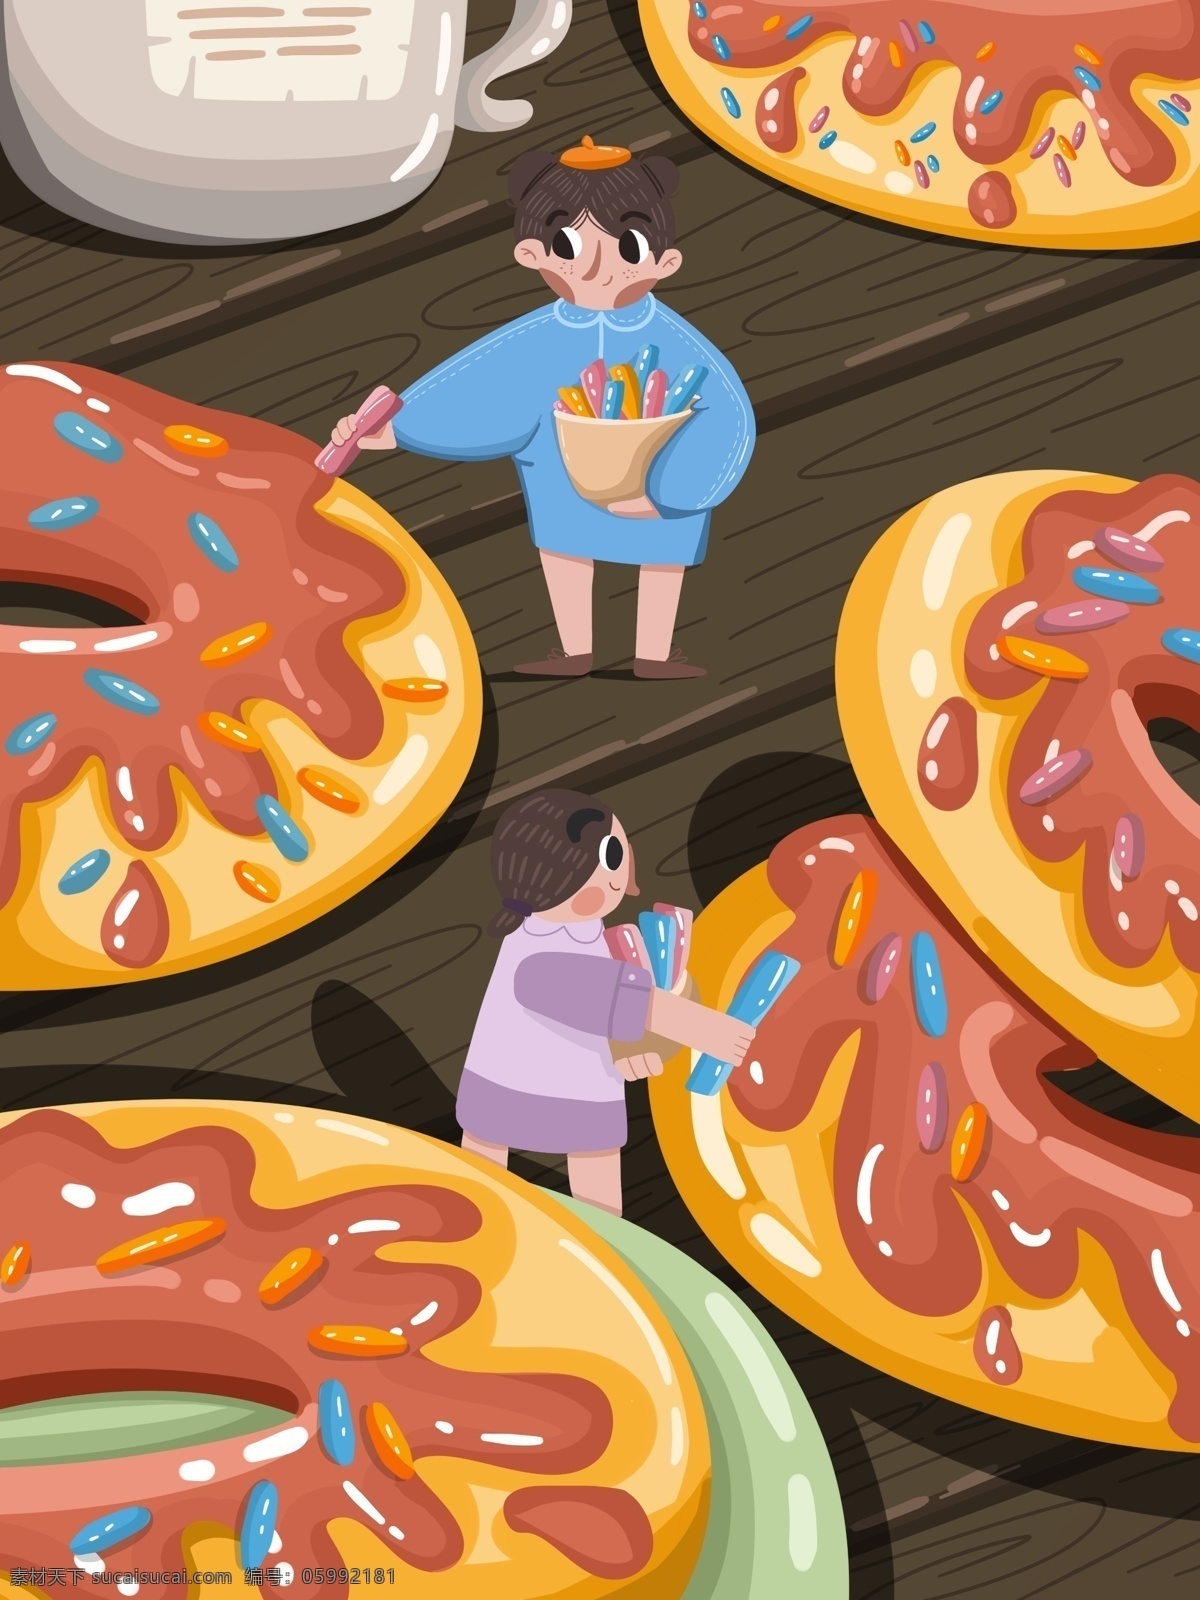 美食 大作 战 甜甜 圈 原创 壁纸 插画 插图 商用 甜甜圈